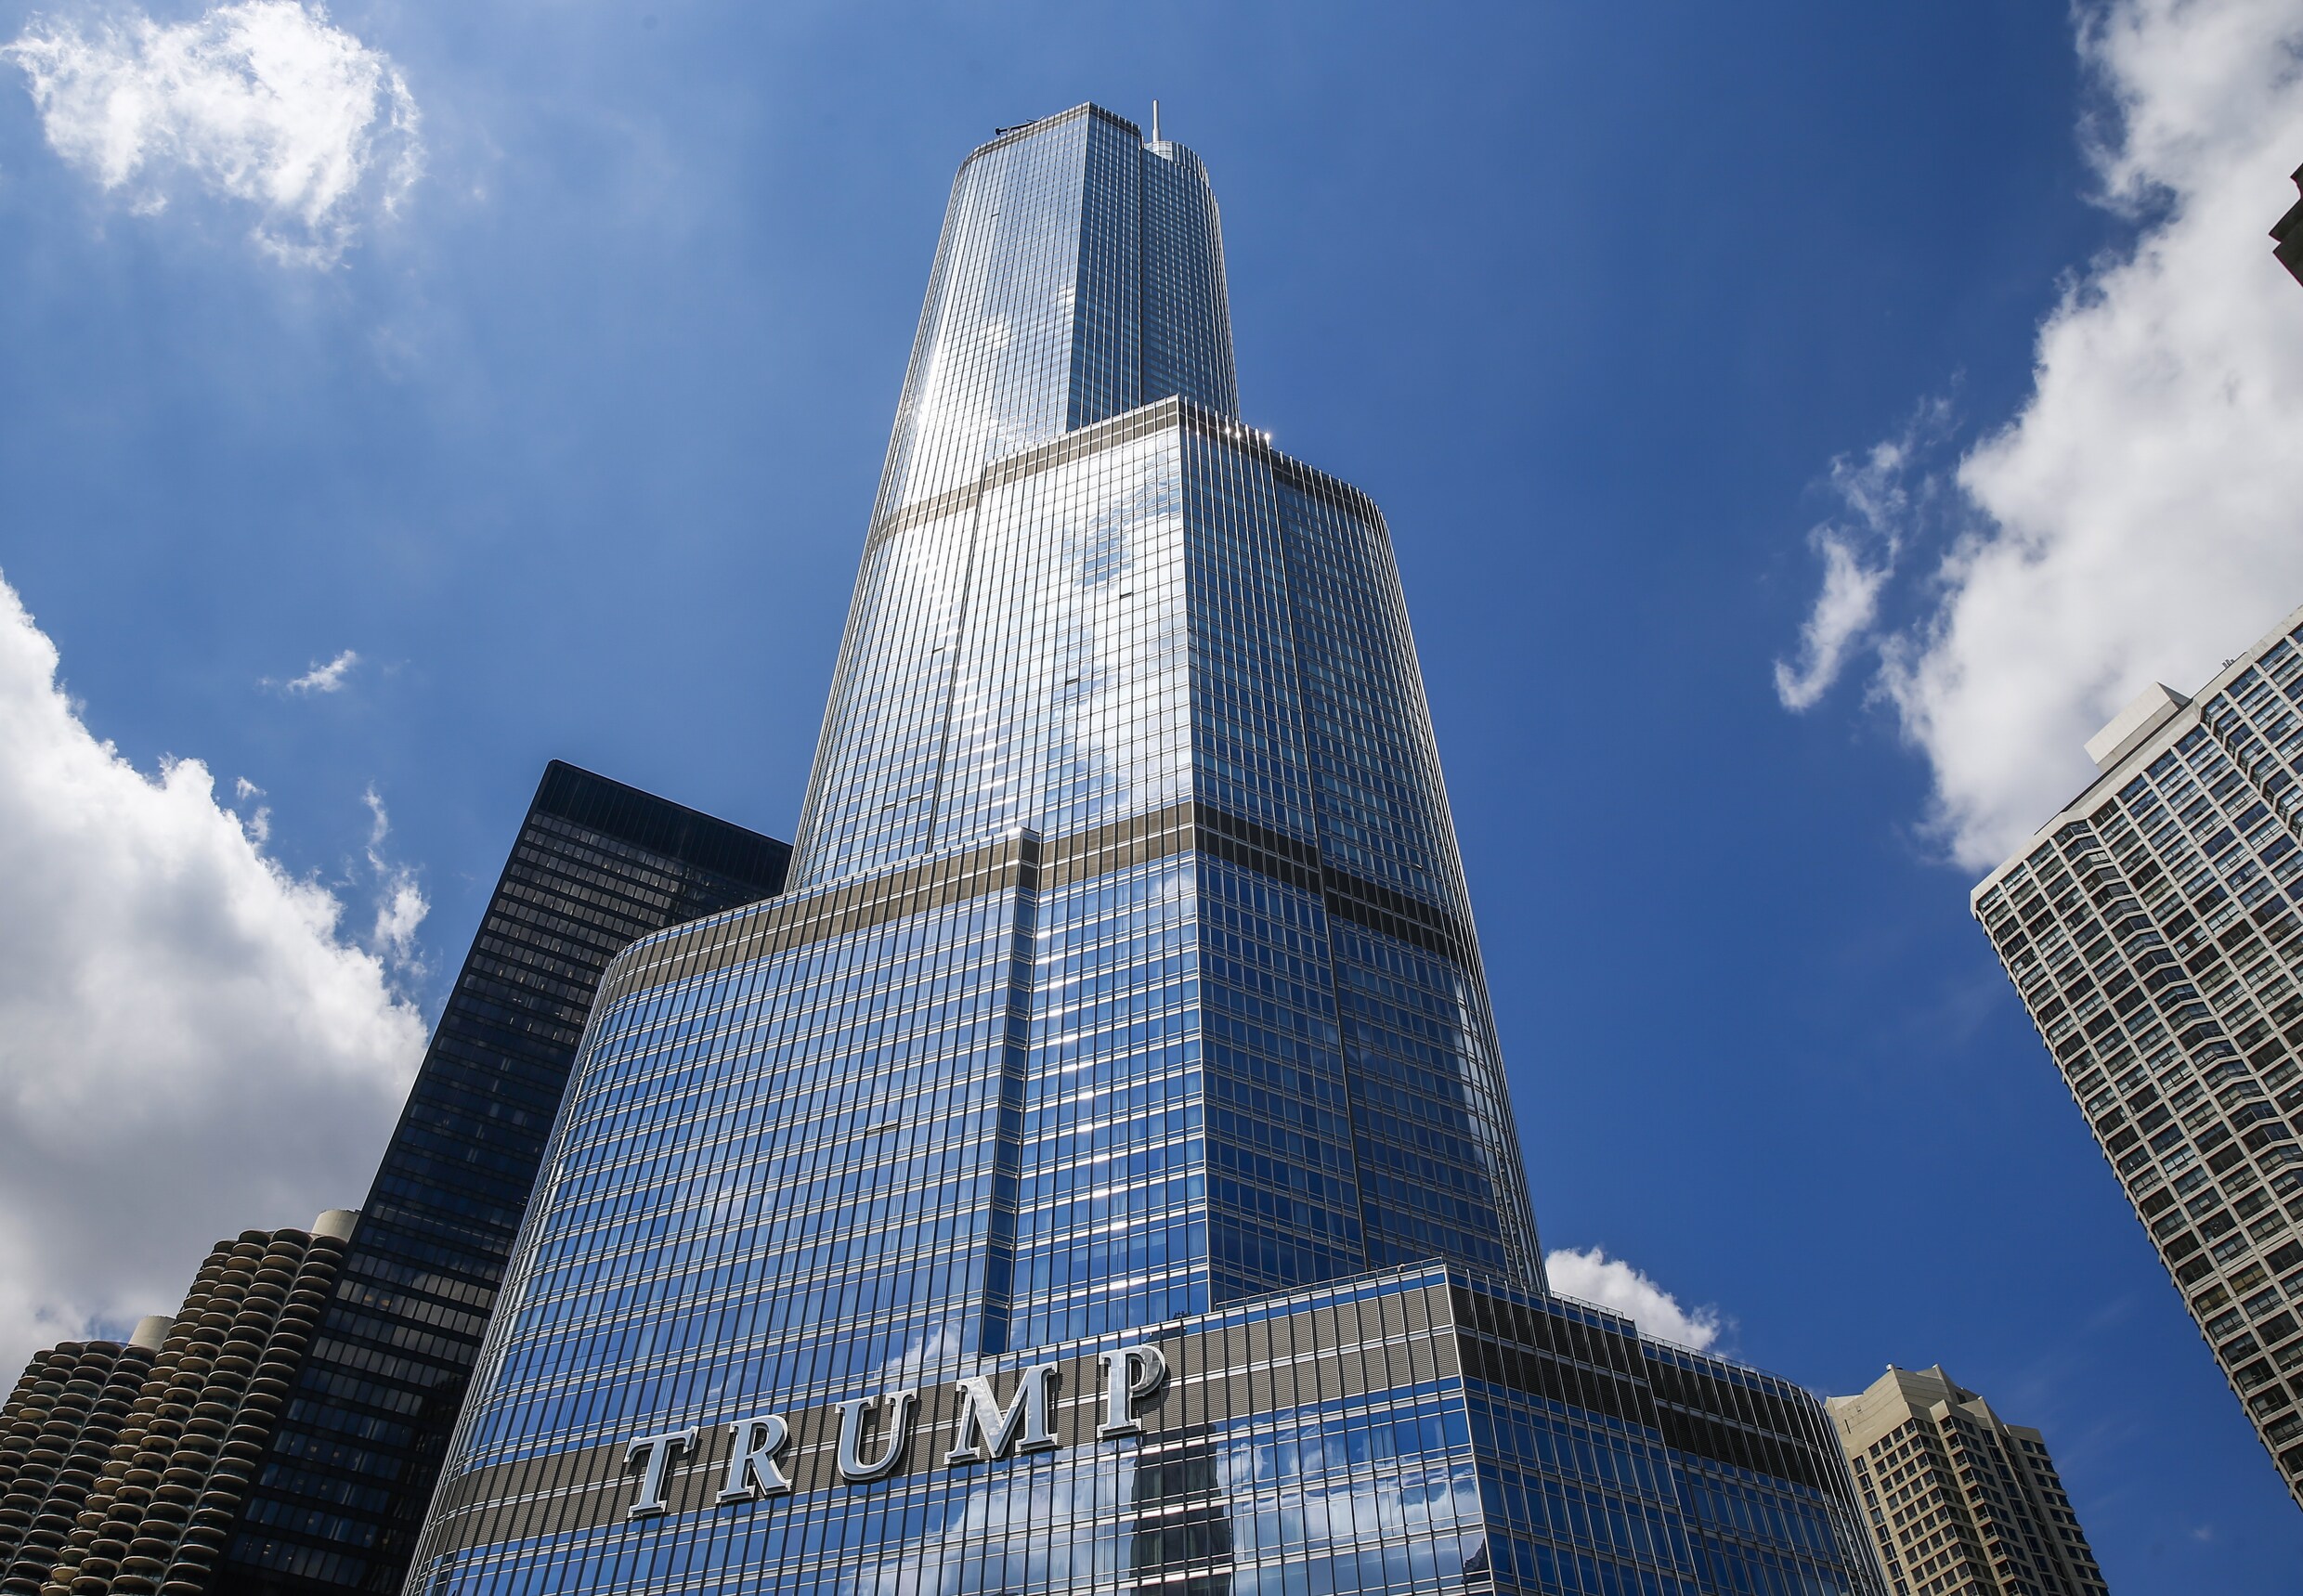 "Trump Tower pompt iedere dag illegaal miljoenen liters water uit Chicago River"